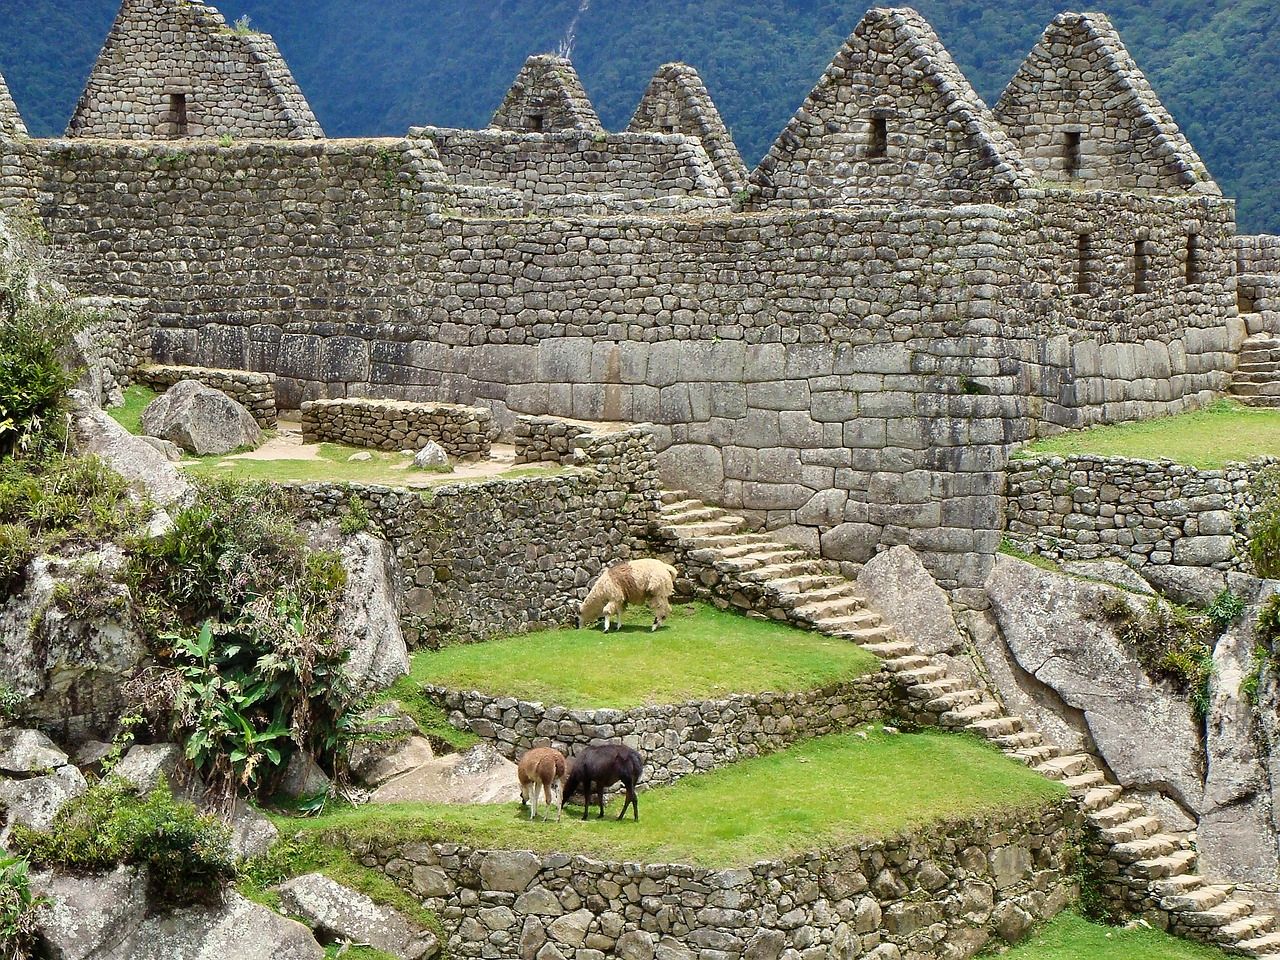 Llamas graze in Machu Picchu, Peru